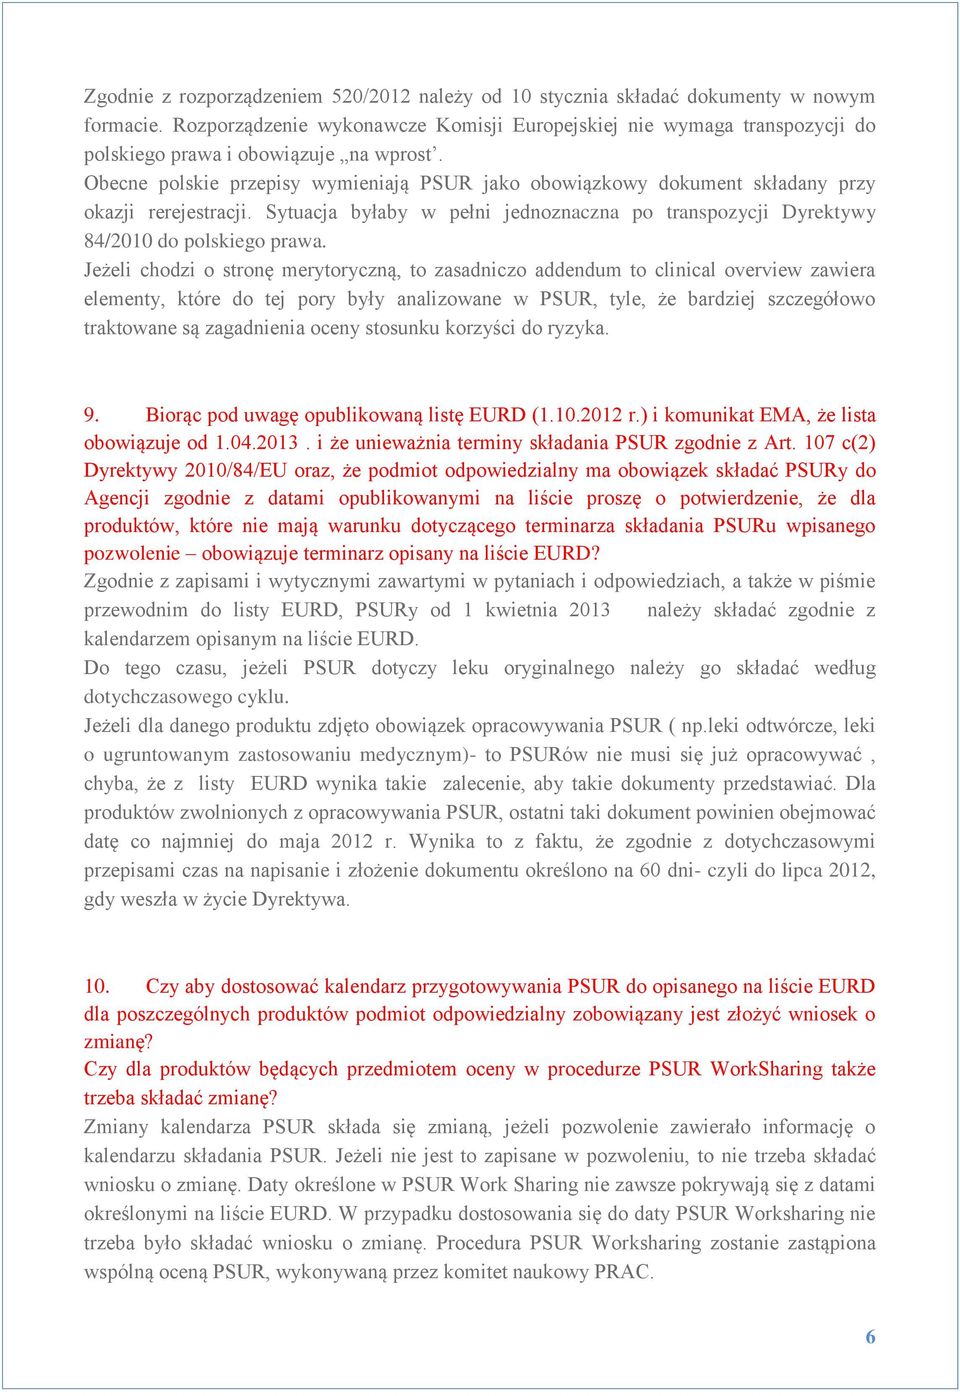 Obecne polskie przepisy wymieniają PSUR jako obowiązkowy dokument składany przy okazji rerejestracji. Sytuacja byłaby w pełni jednoznaczna po transpozycji Dyrektywy 84/2010 do polskiego prawa.